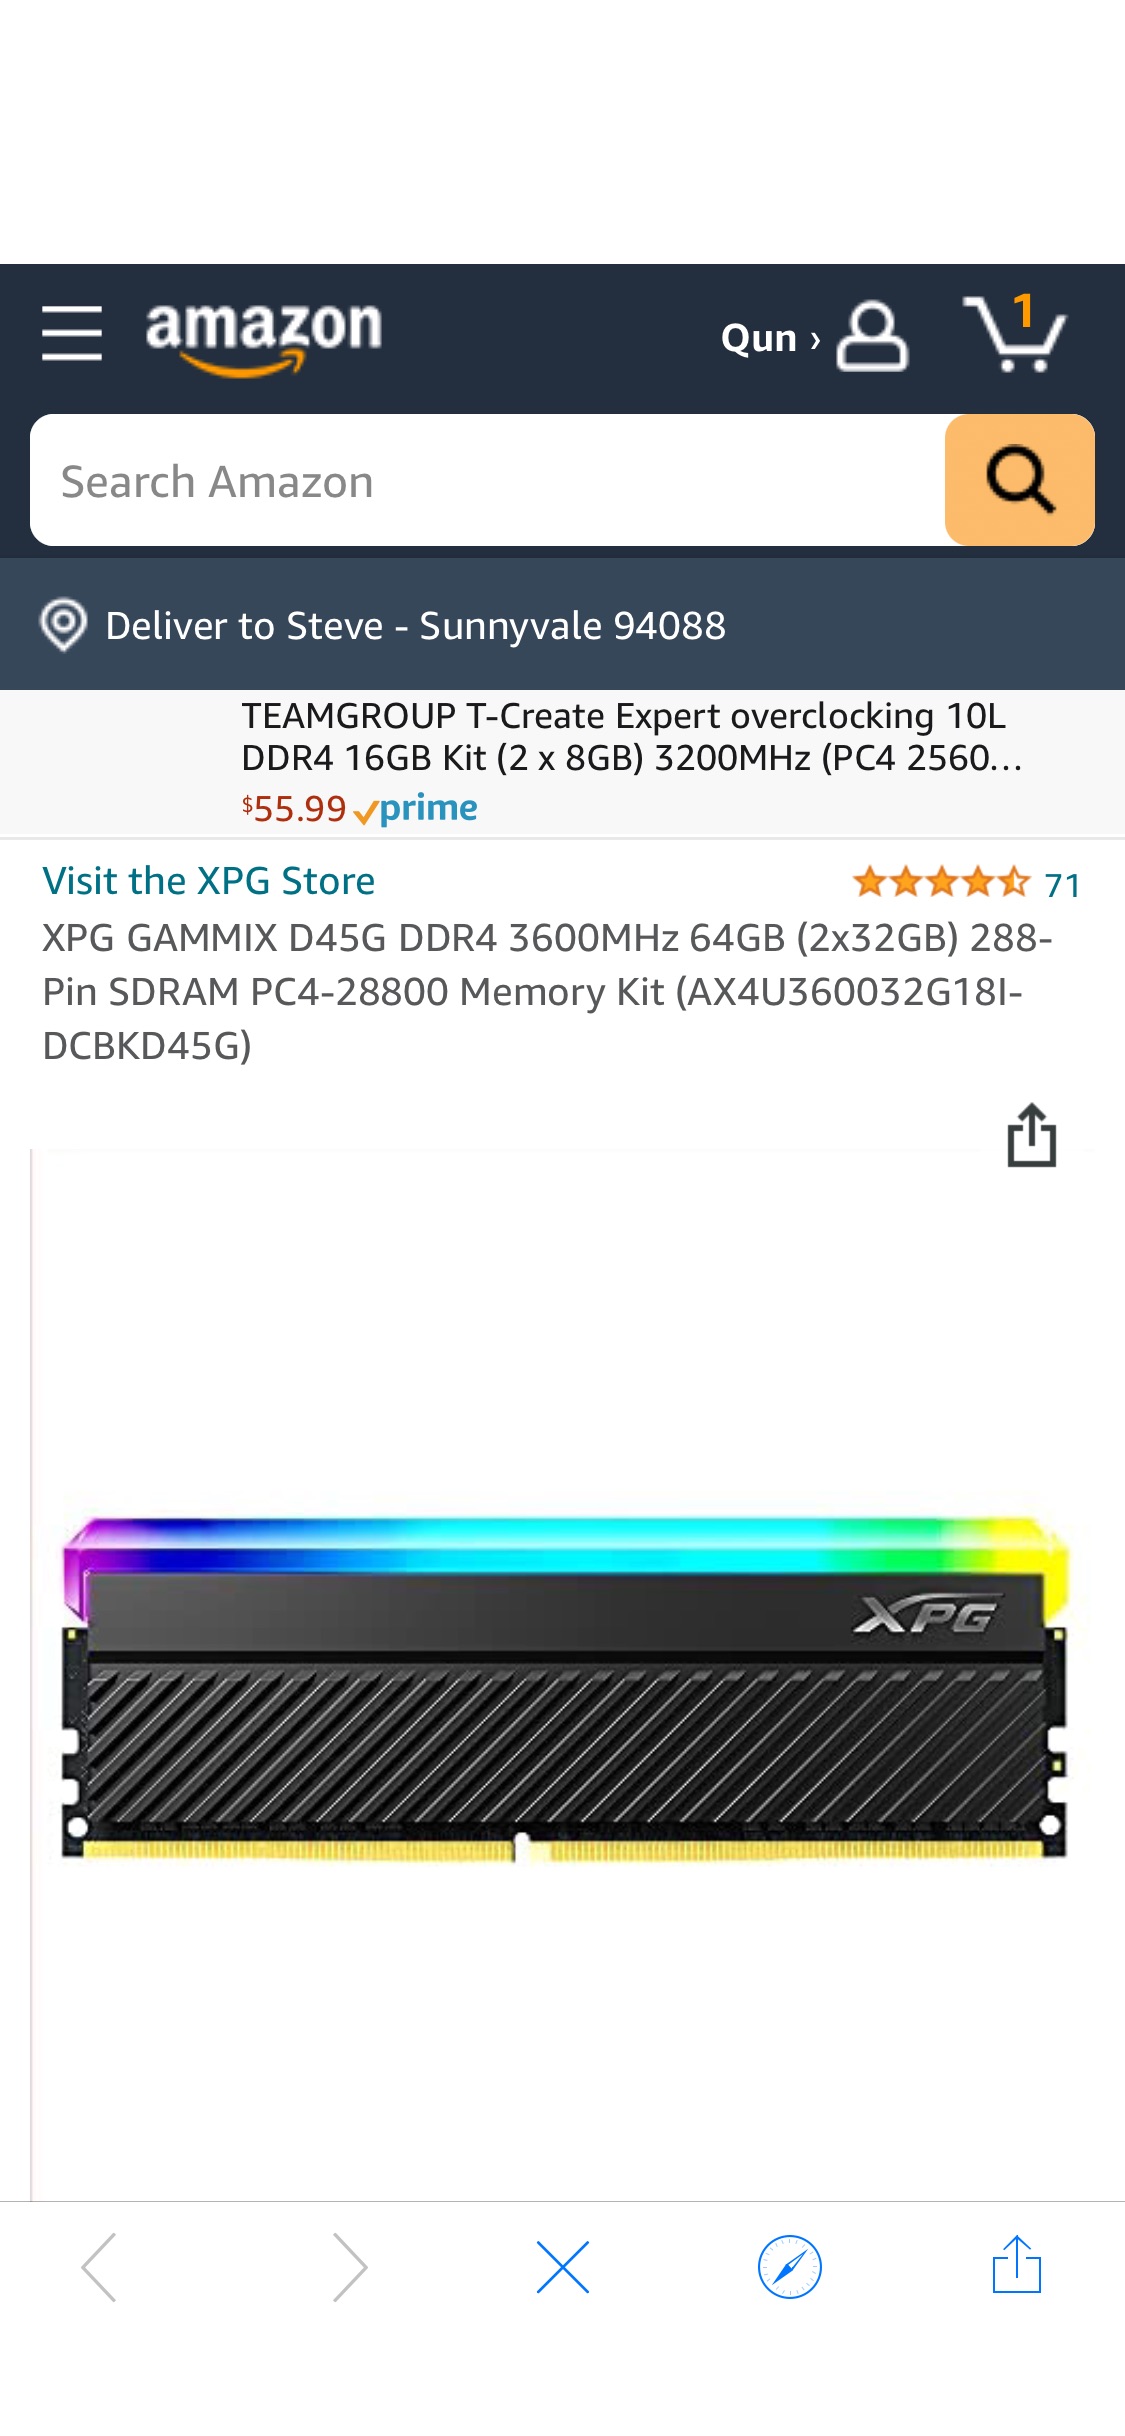 XPG GAMMIX D45G DDR4 3600MHz 64GB (2x32GB) 288-Pin SDRAM PC4-28800 Memory Kit (我AX4U360032G18I-DCBKD45G) at Amazon.com